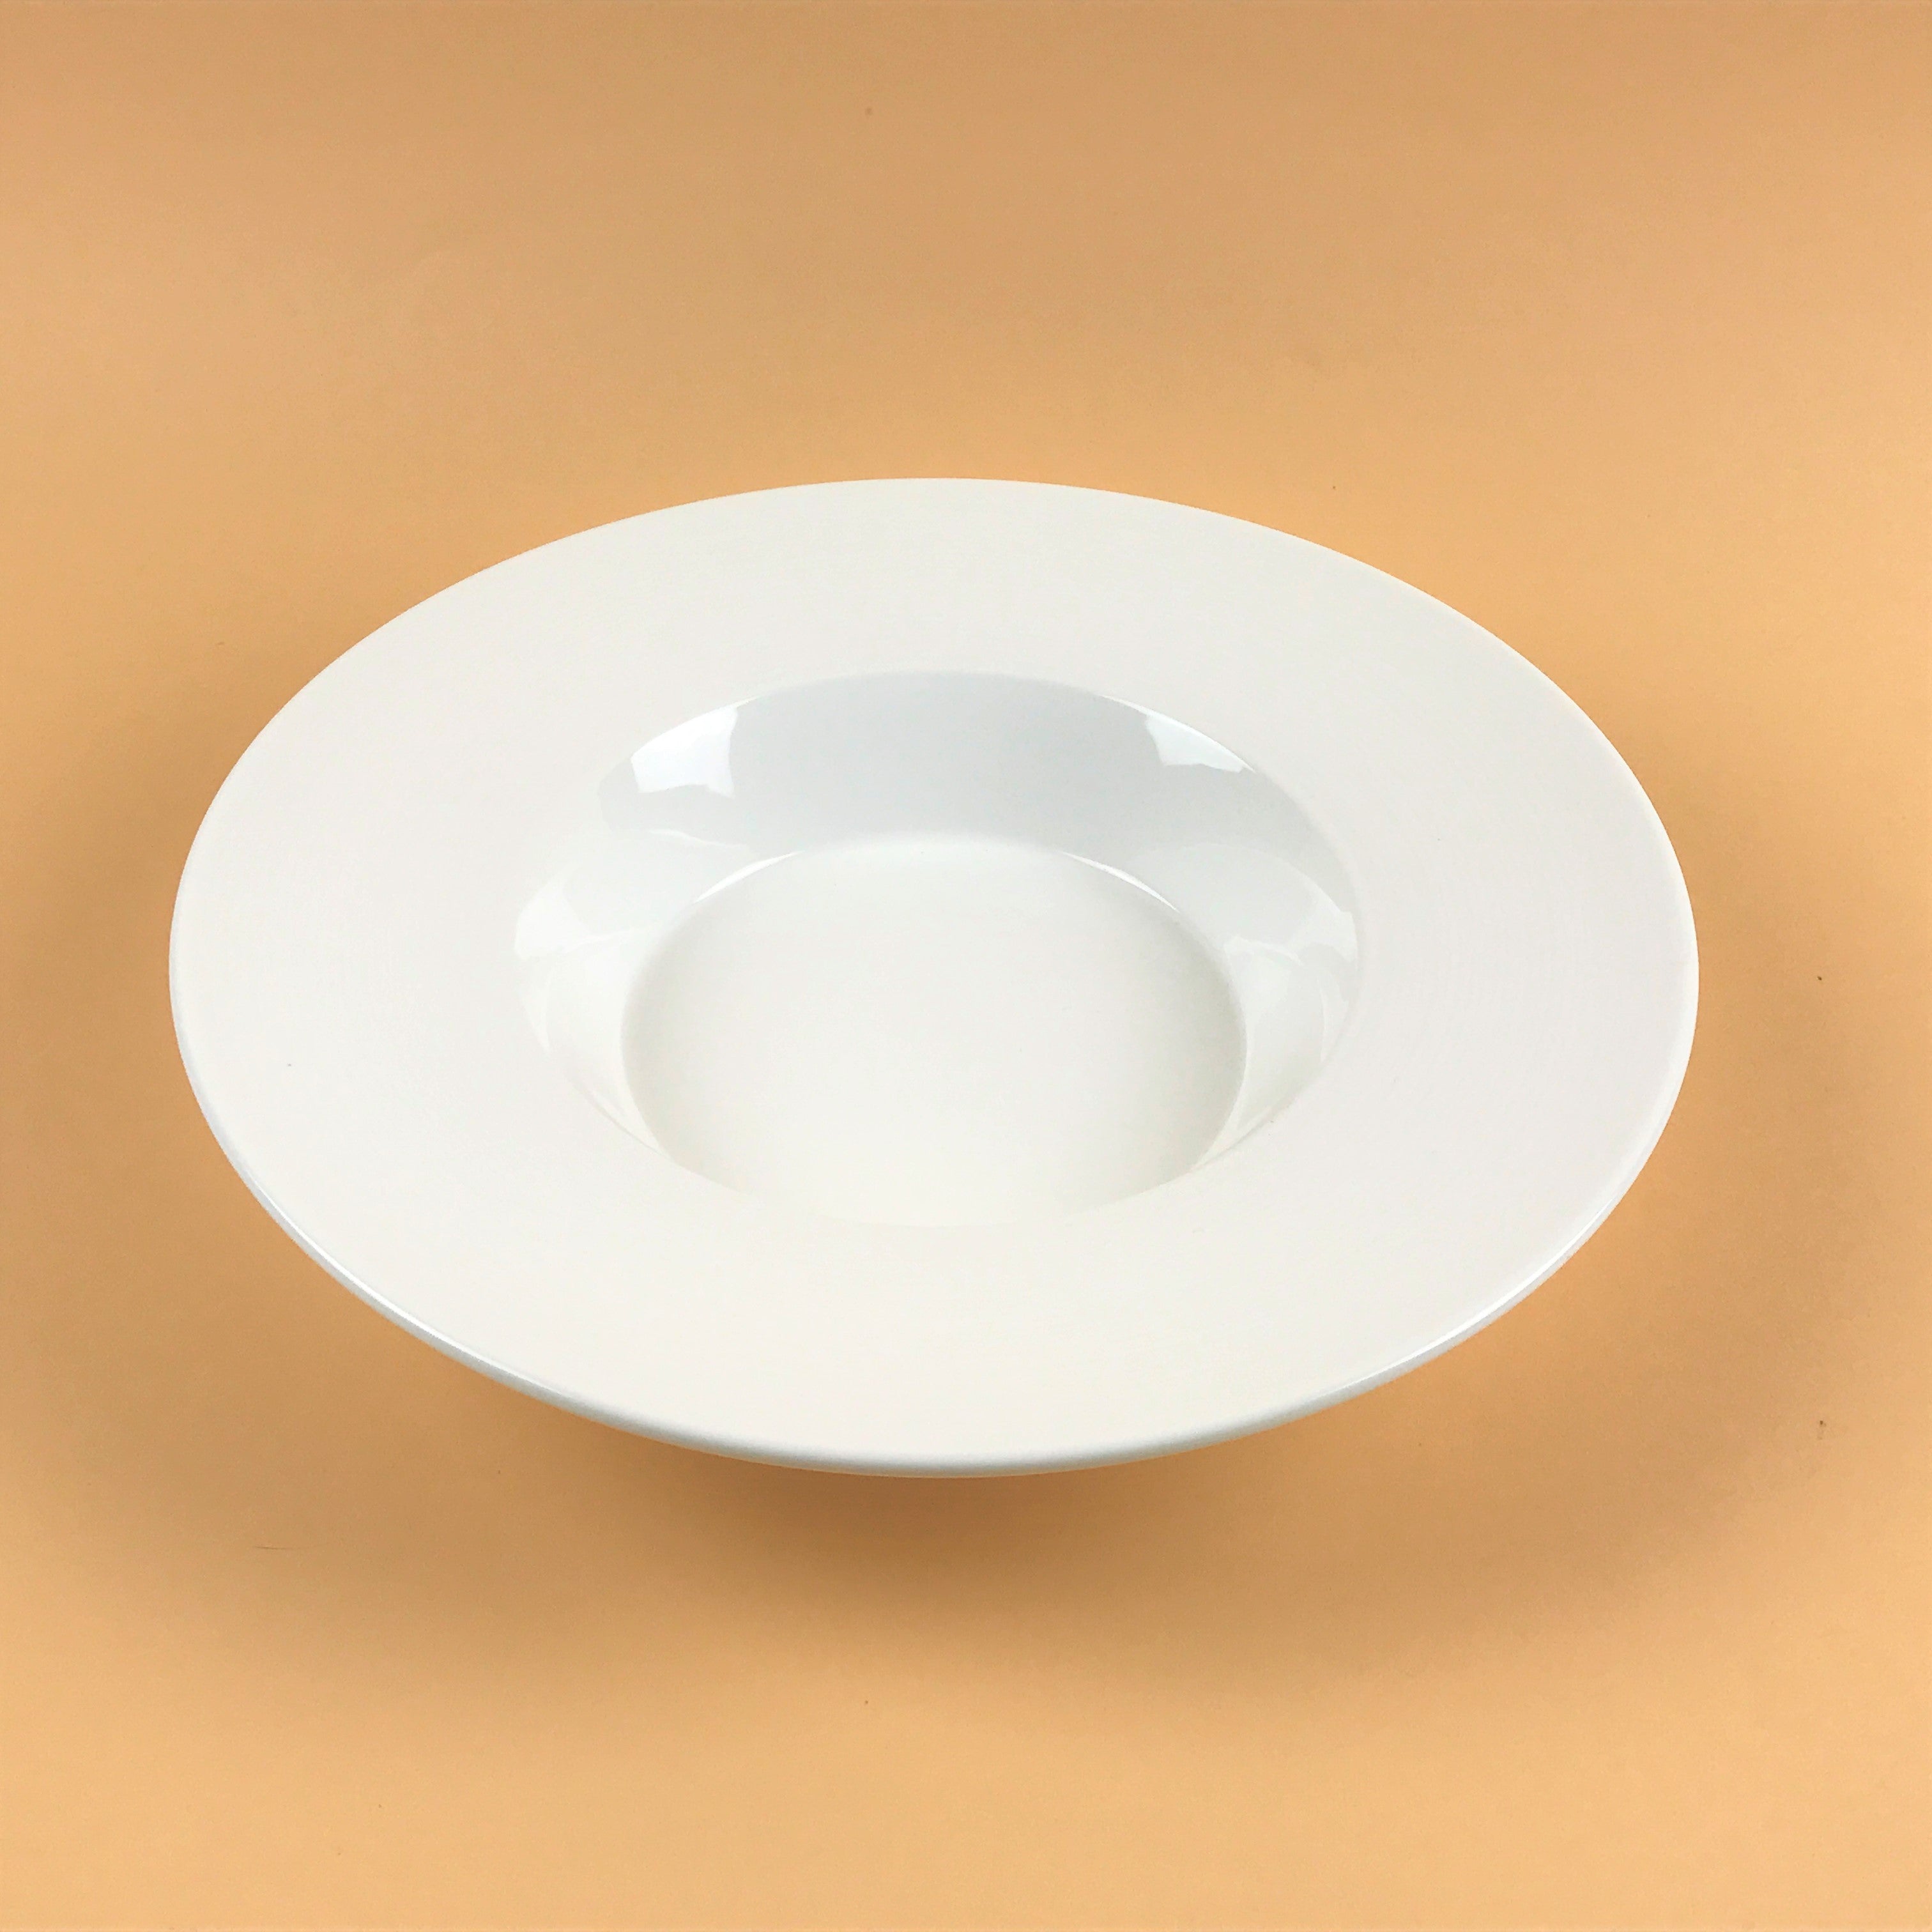 Sazanami White Wide Rim Bowl Pasta Plates in 2 sizes, 10" dia.(8 oz) and 12" dia.(16 oz)